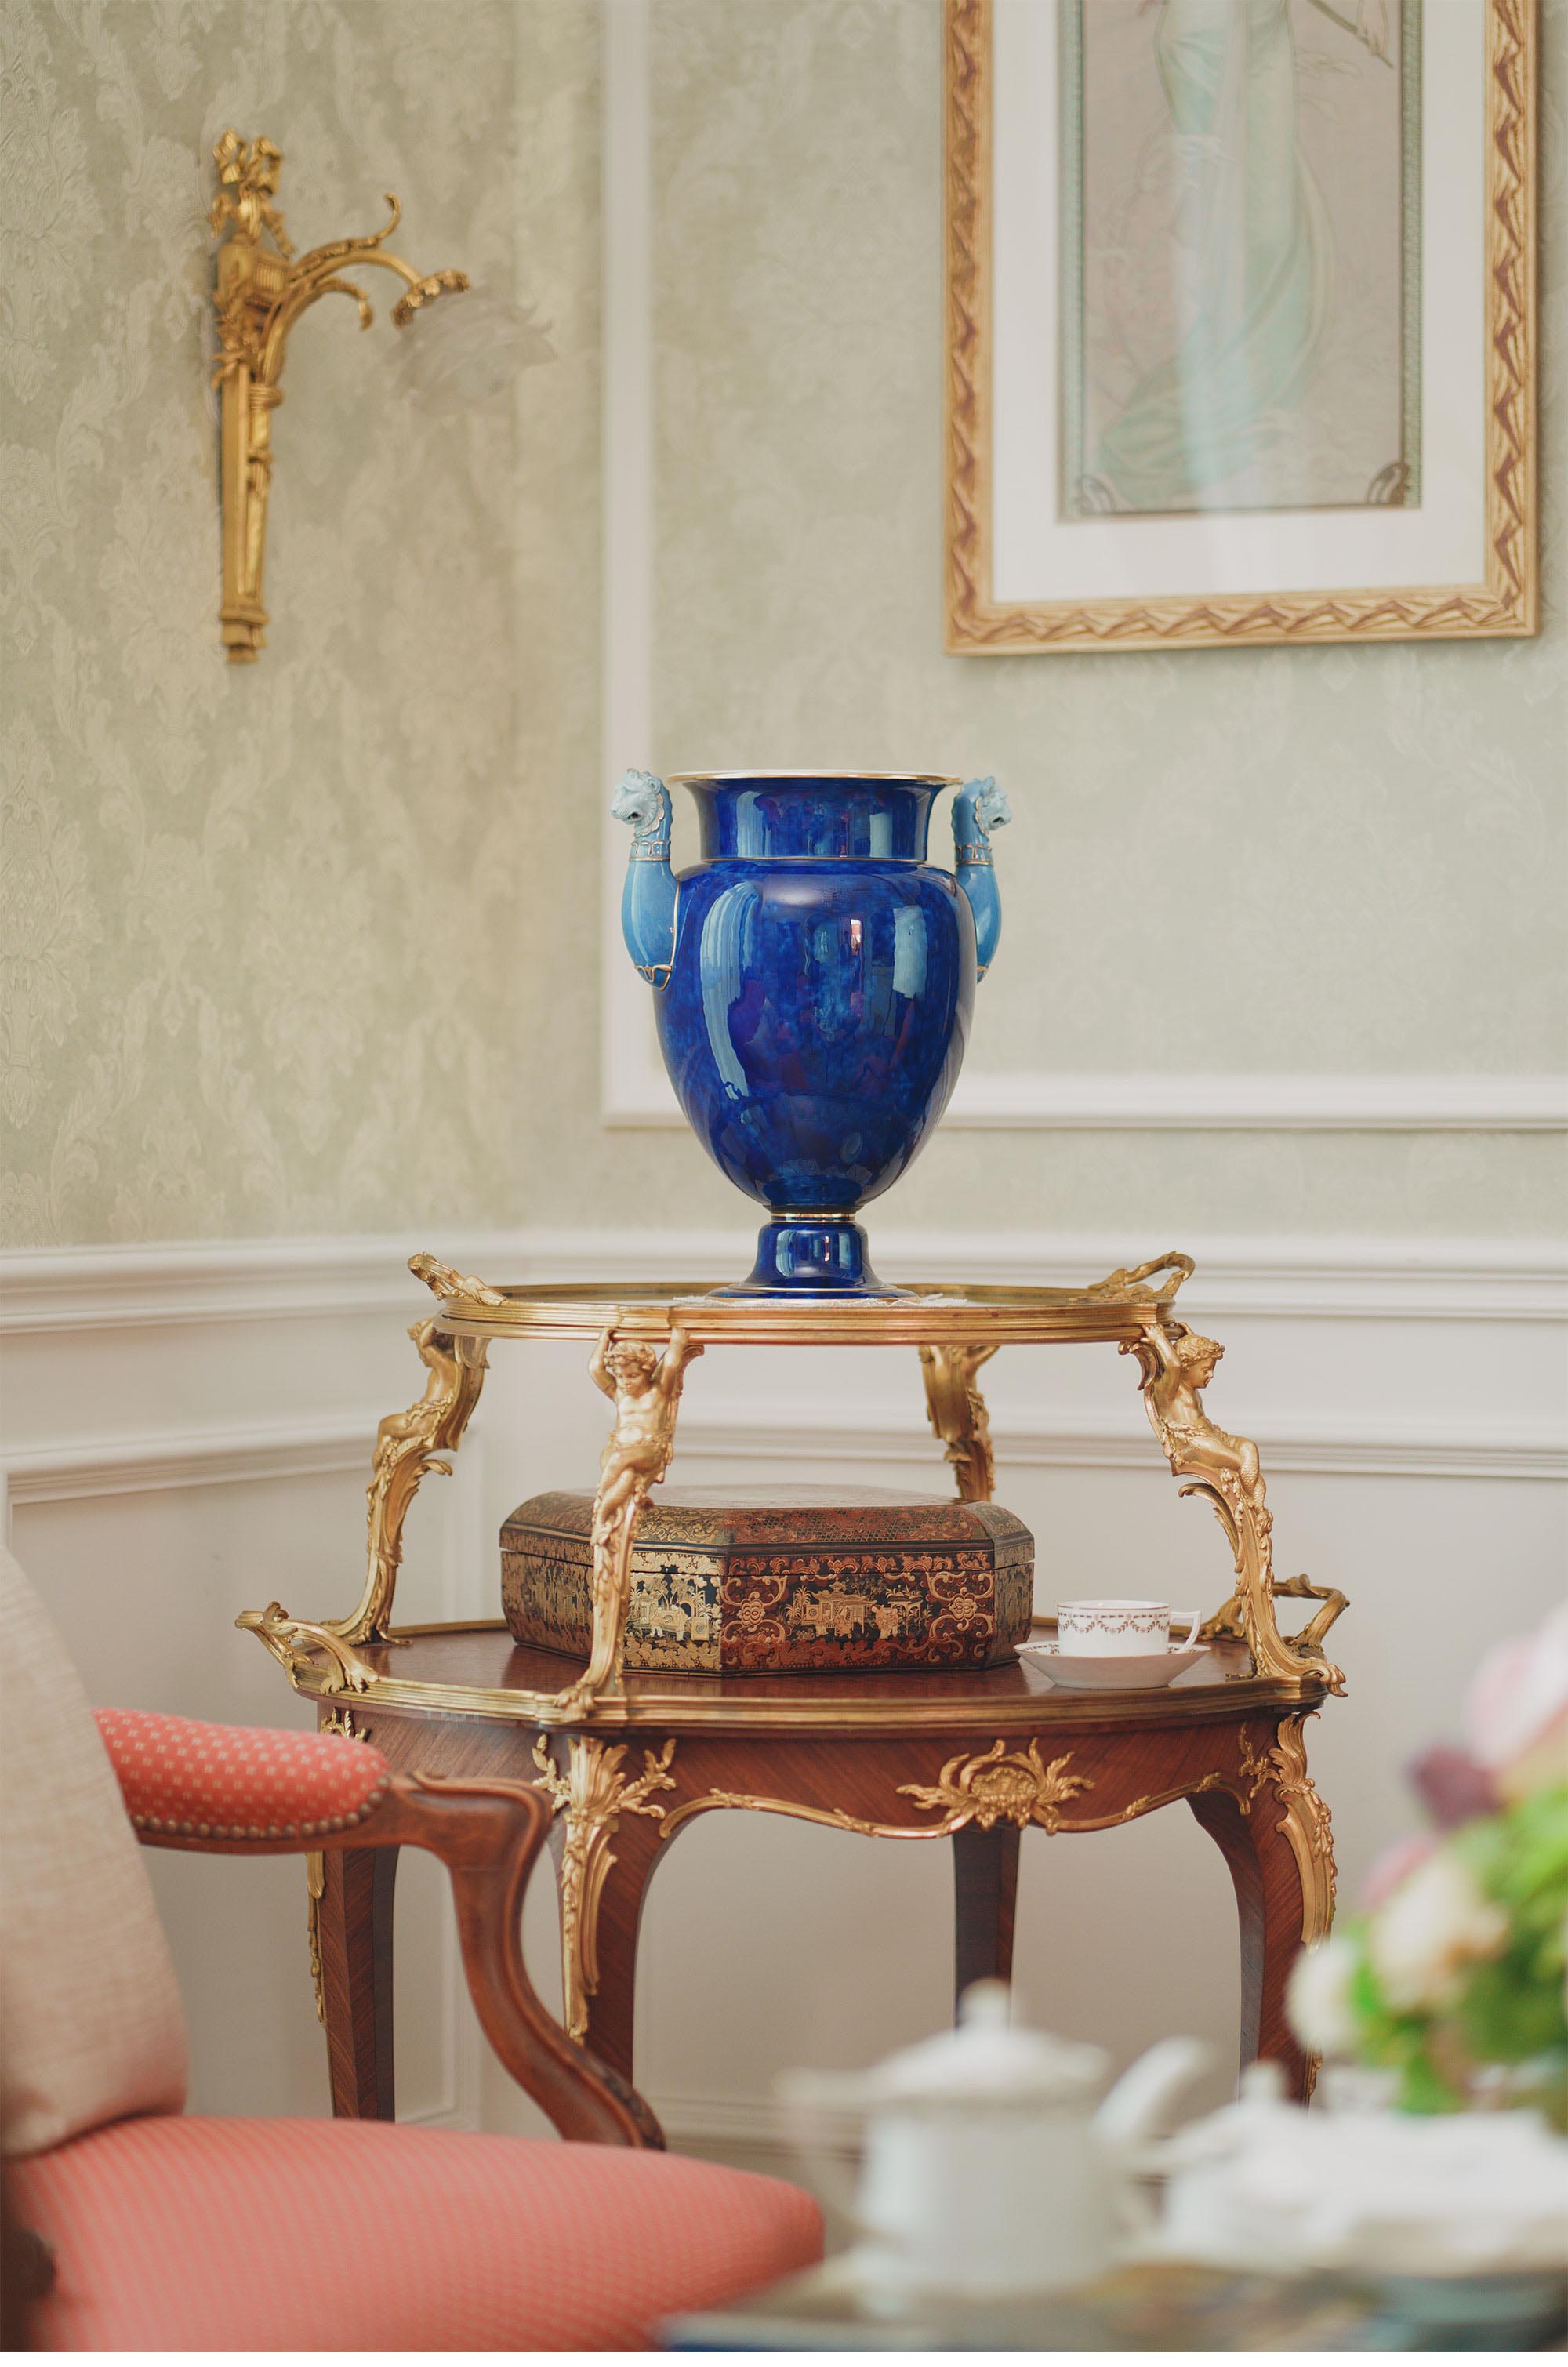 独角鹿西洋古董1898年代法国御窑塞弗尔签名出品手绘描金月白釉狮头双耳云朵蓝瓷瓶